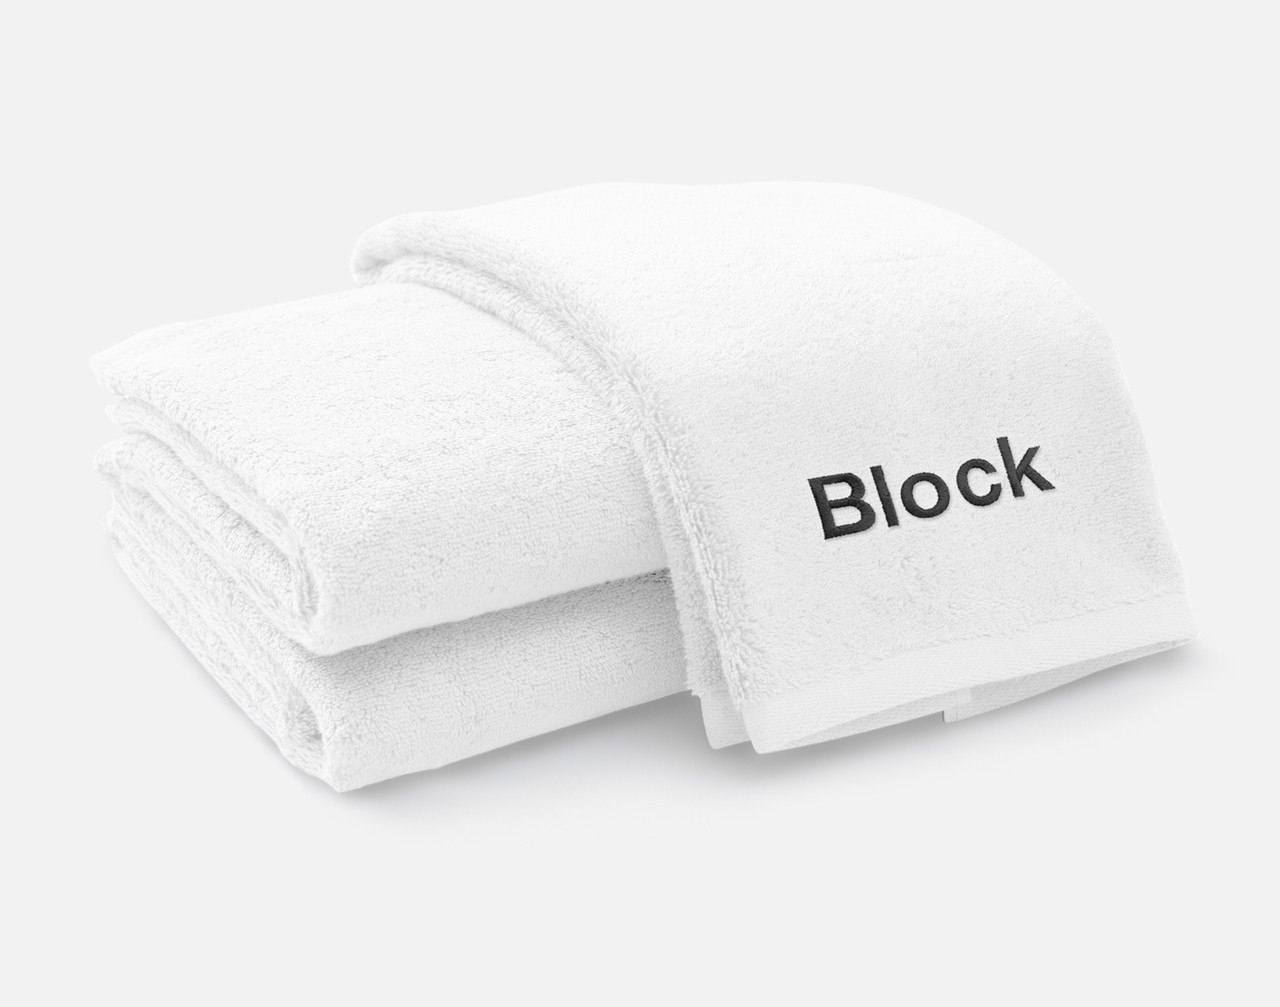 Vue pliée de notre serviette brodée personnalisée ensemble en blanc, avec la police Block brodée en blanc noir le long du bord inférieur.